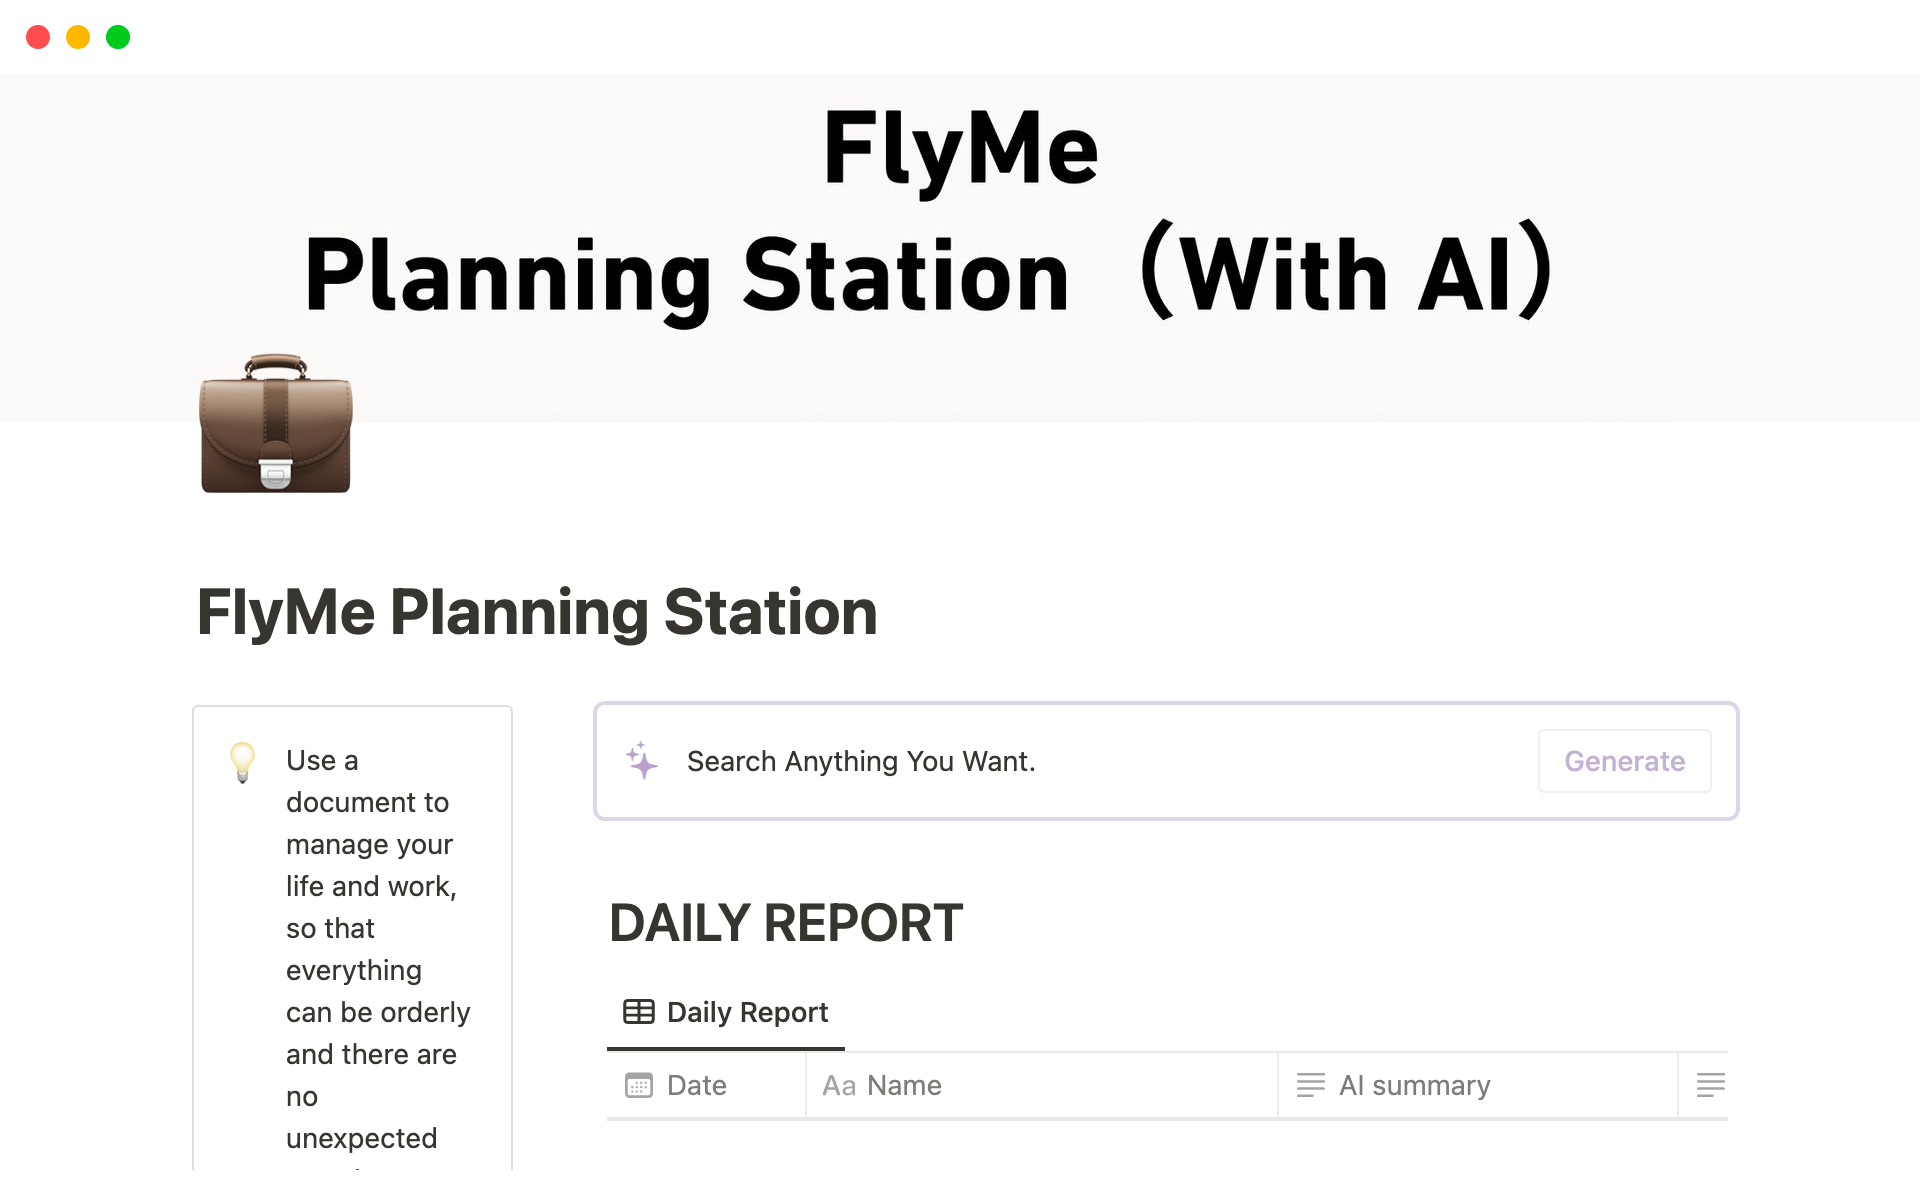 Uma prévia do modelo para FlyMe Planning Station